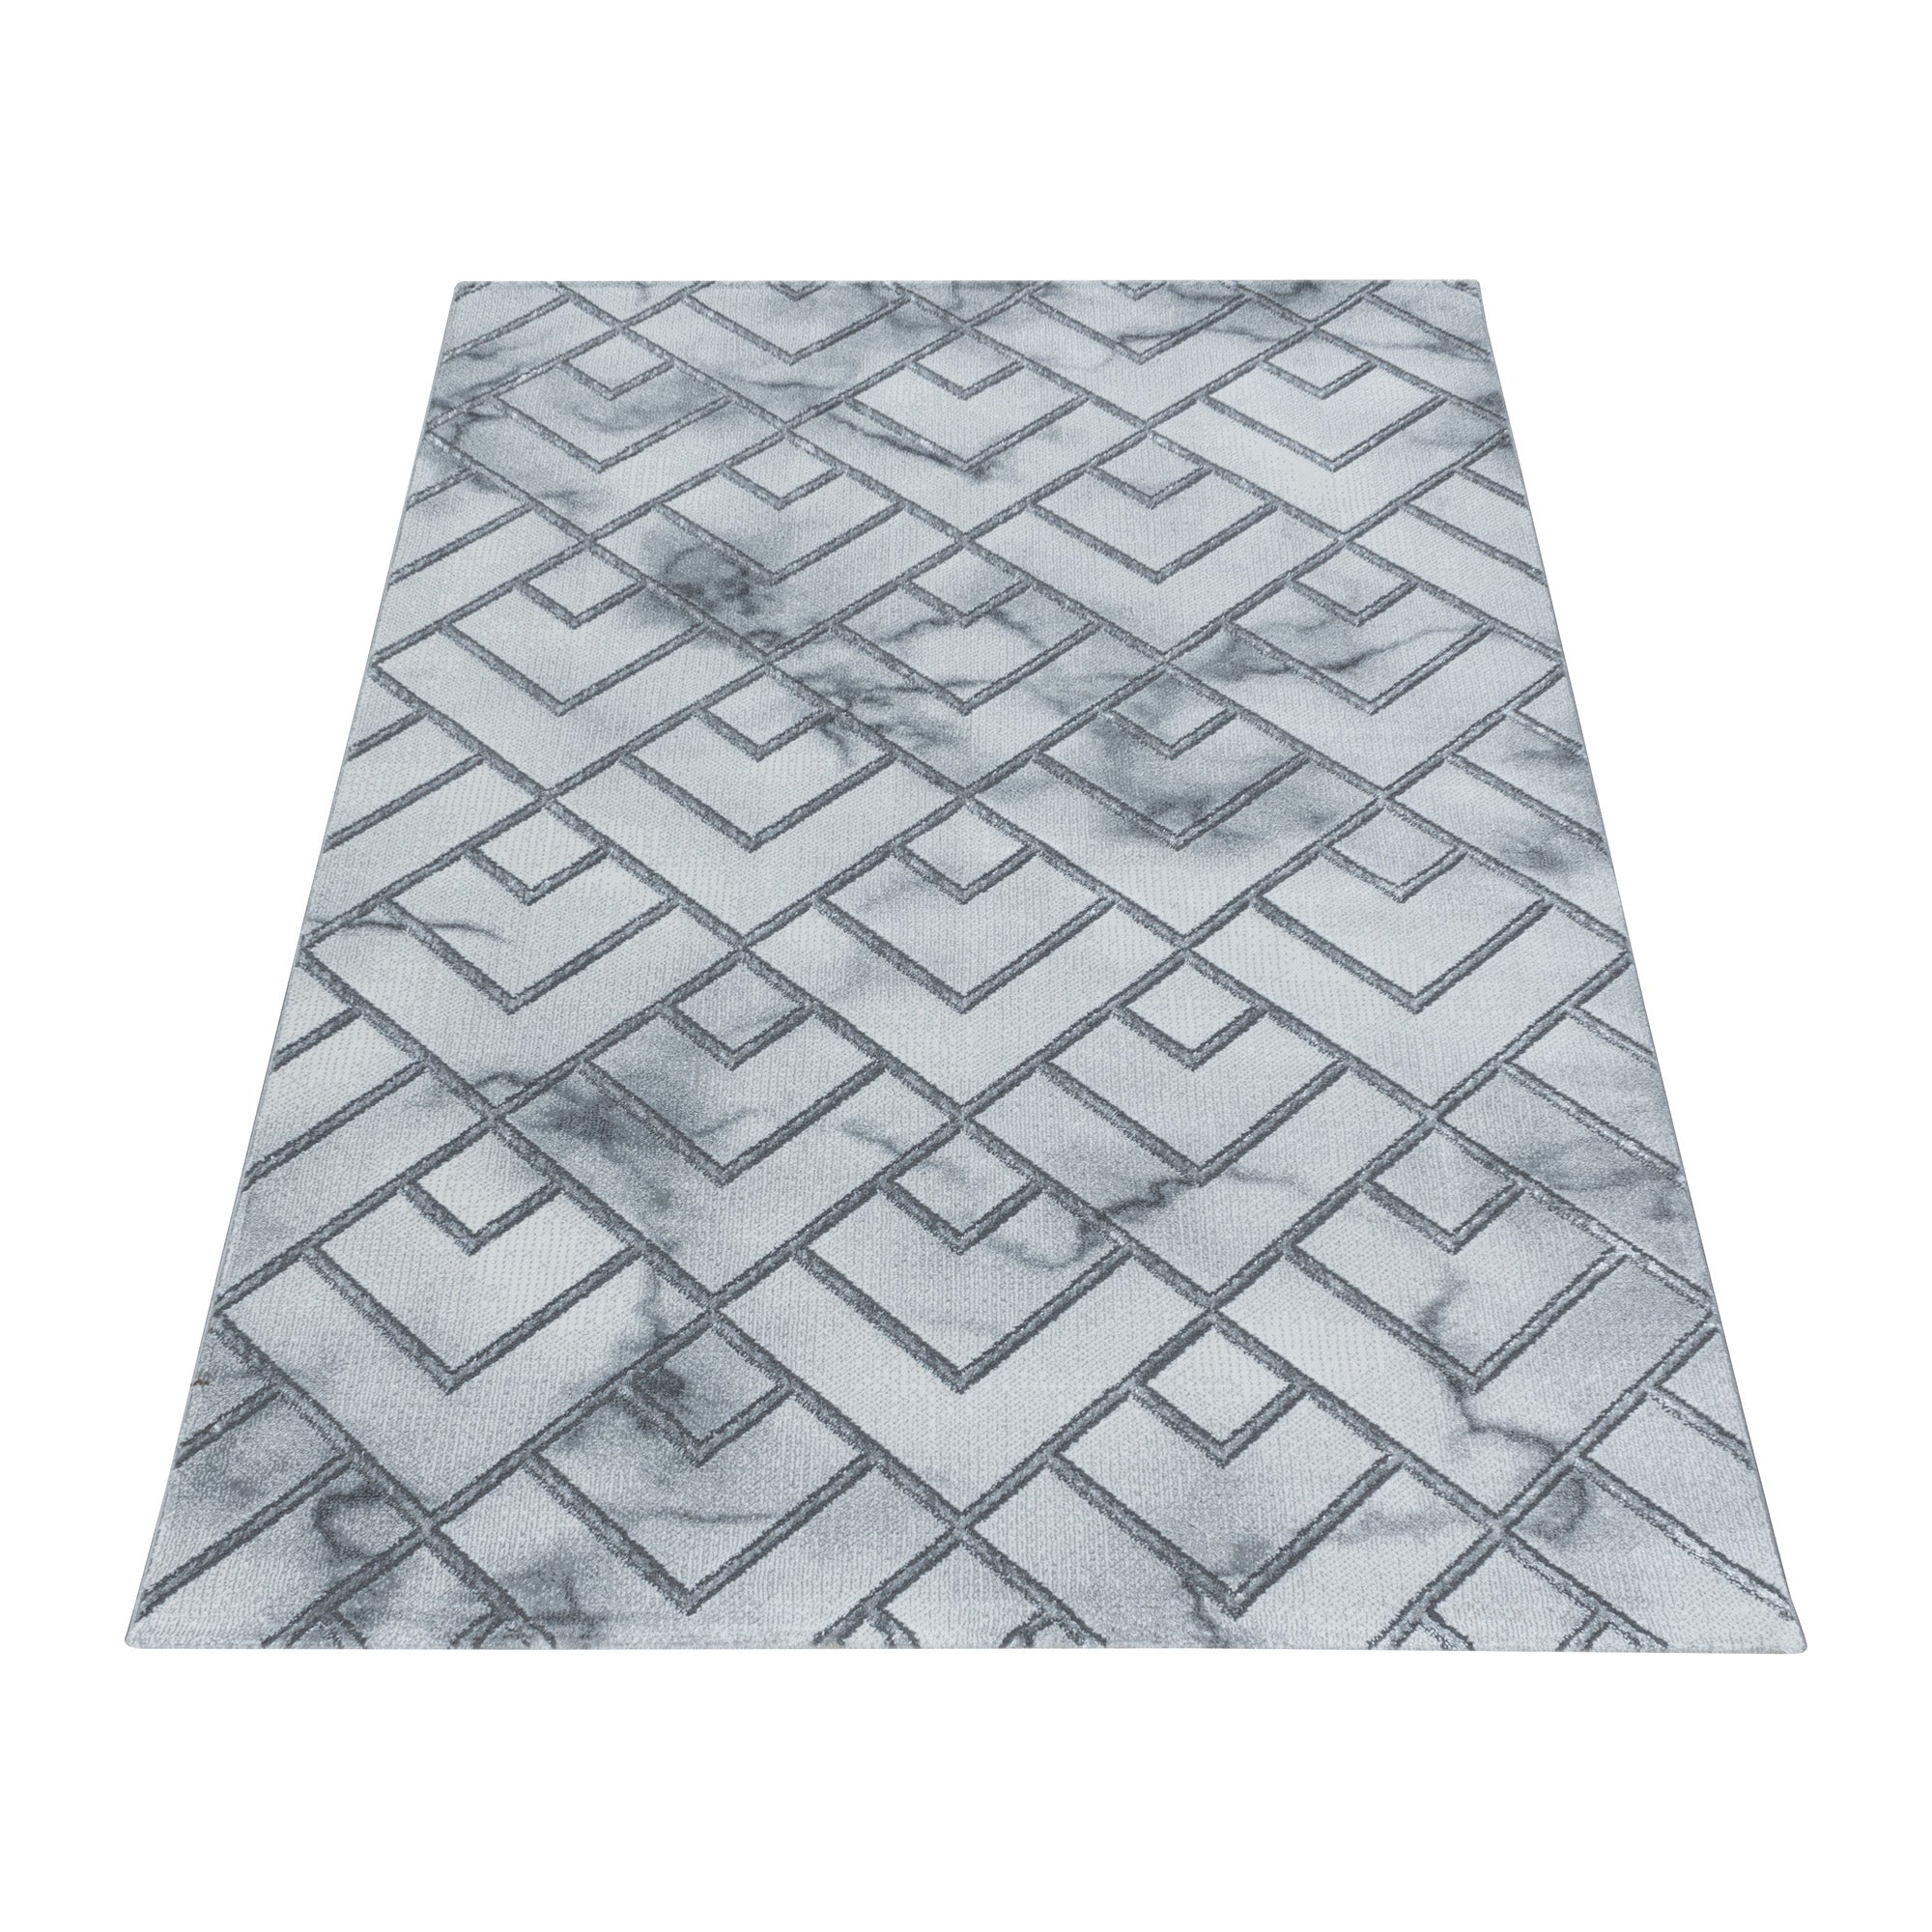 Kurzflor Design Teppich Wohnzimmerteppich Muster Marmoriert Linien Karo Silber